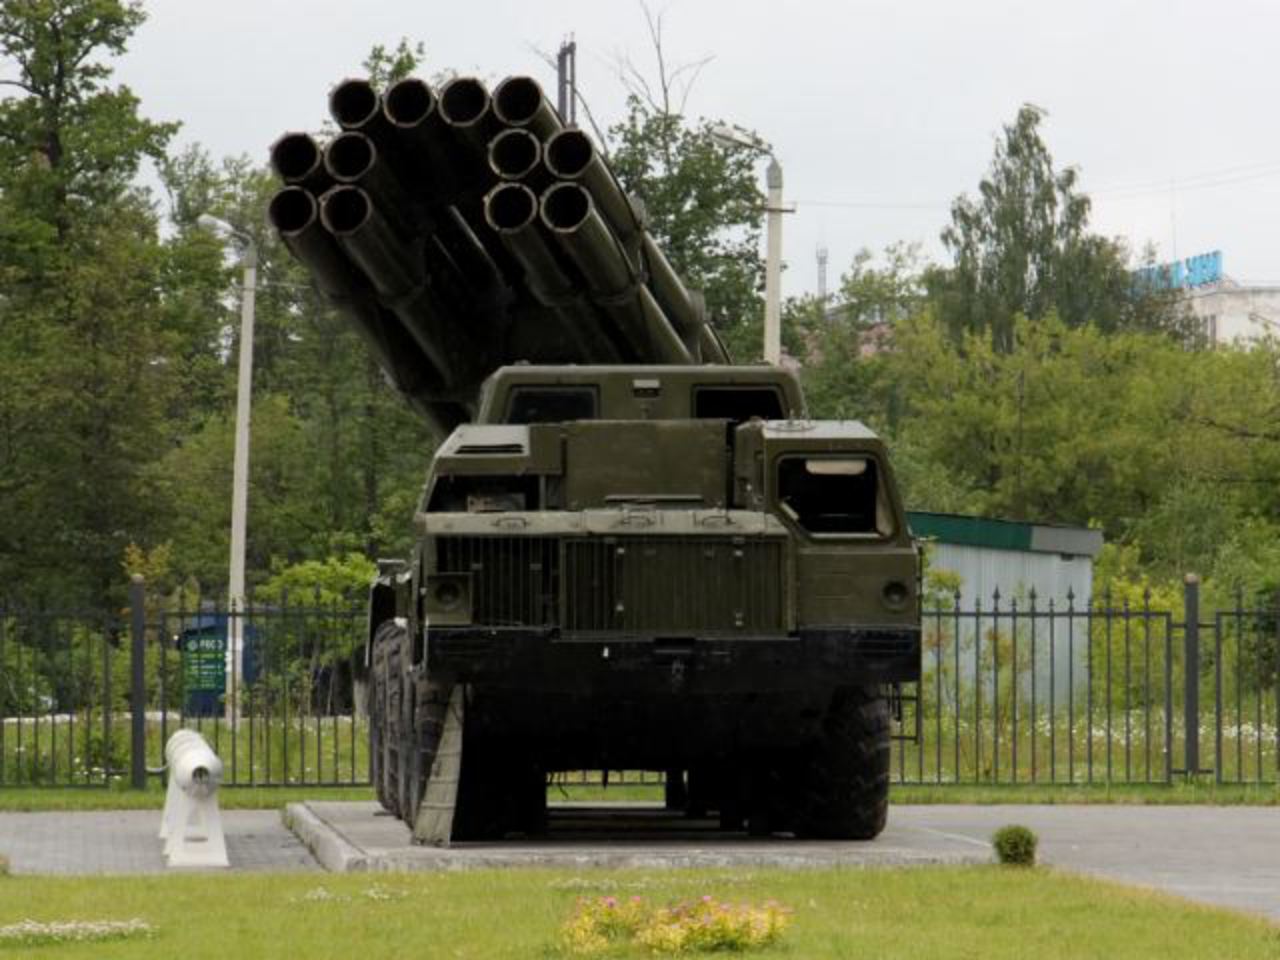 BM-30 Smerch 9K58 300mm multiple rocket launcher system technical ...